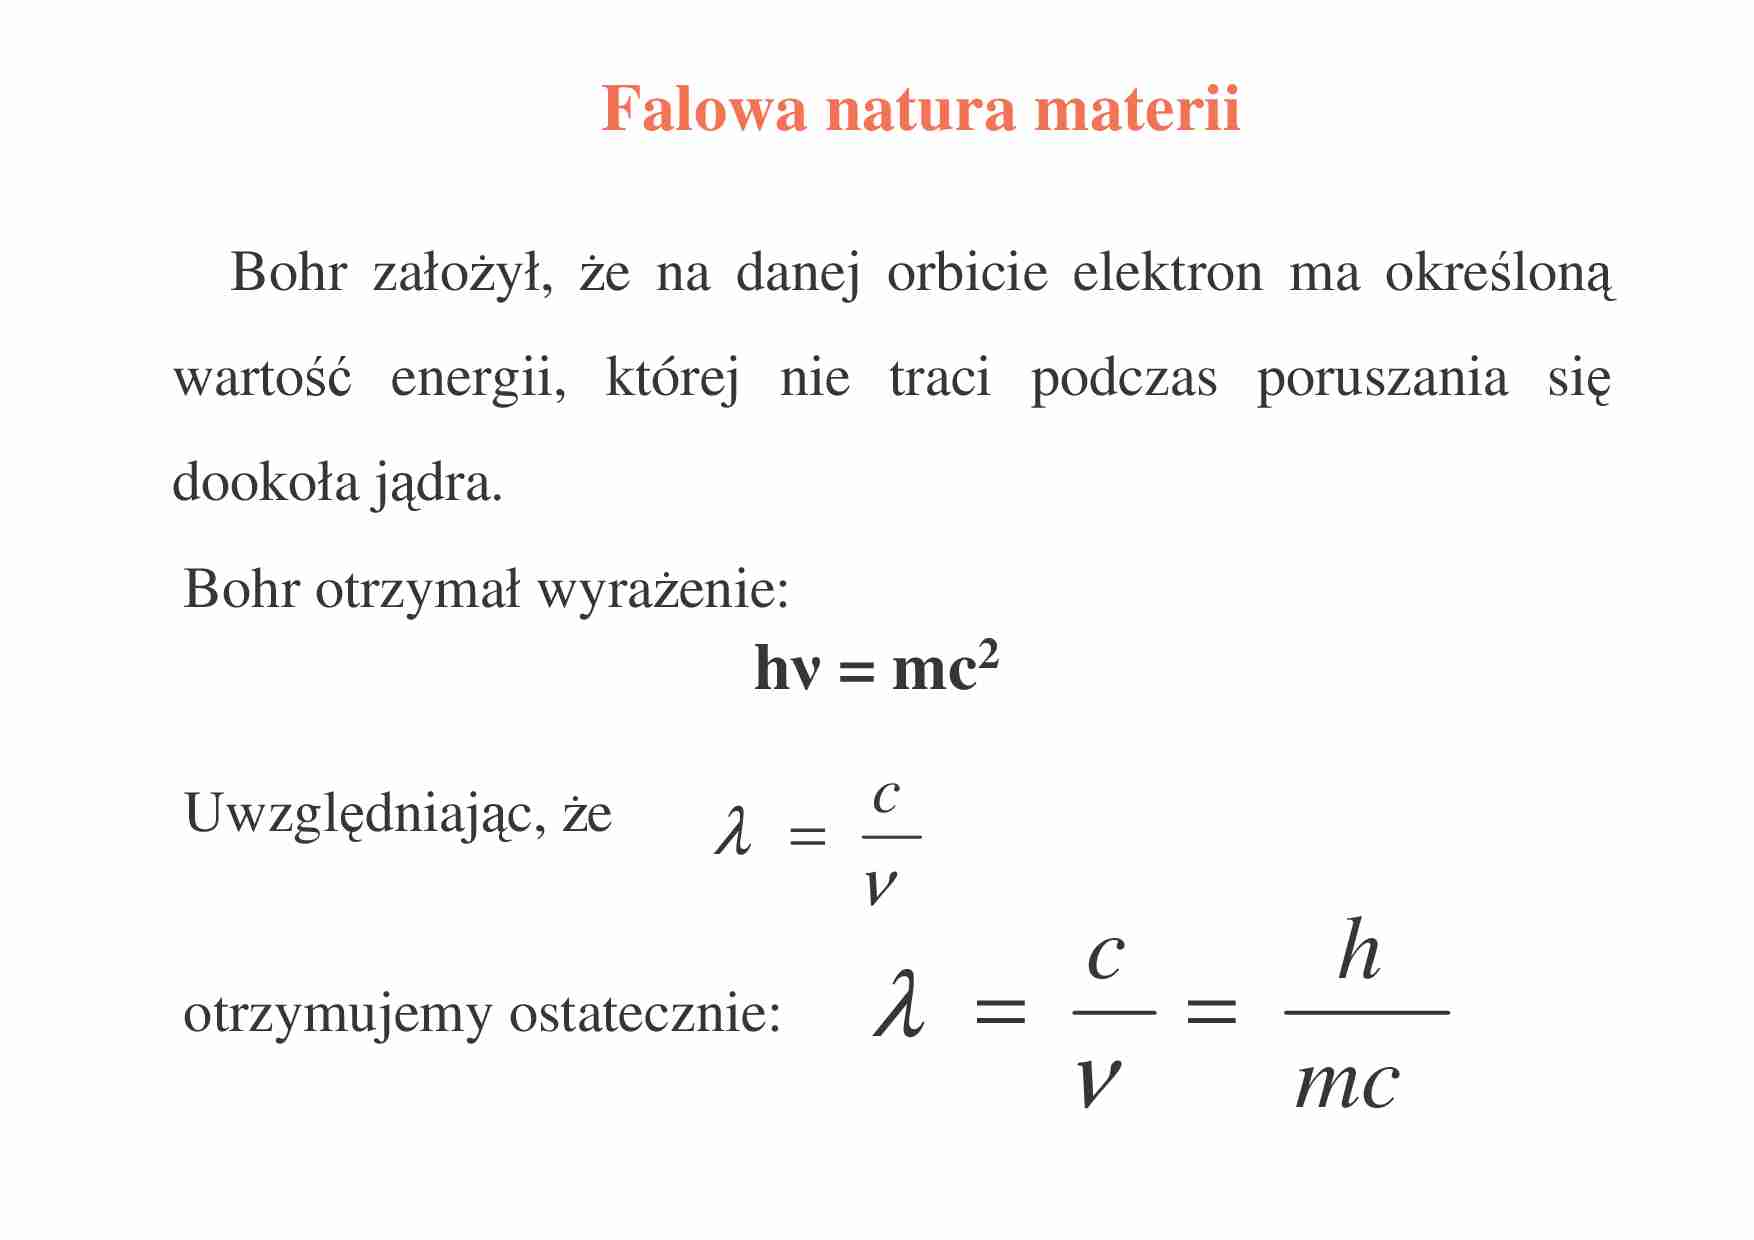 Chemia -  Falowa natura materii - wykład 3 - strona 1